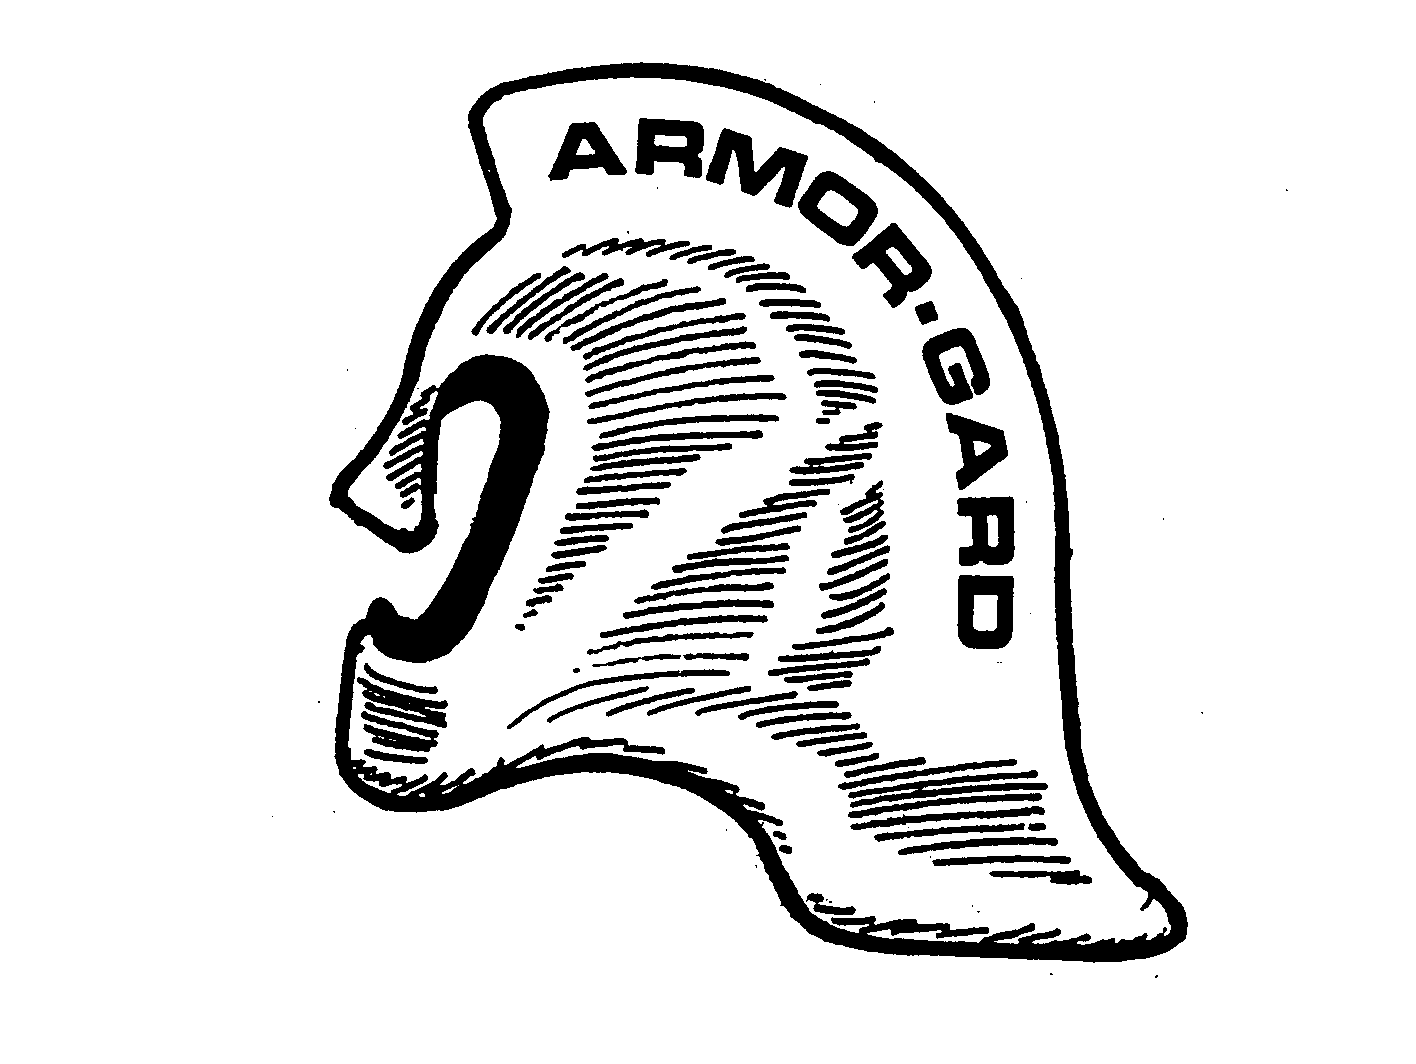 Trademark Logo ARMOR-GARD